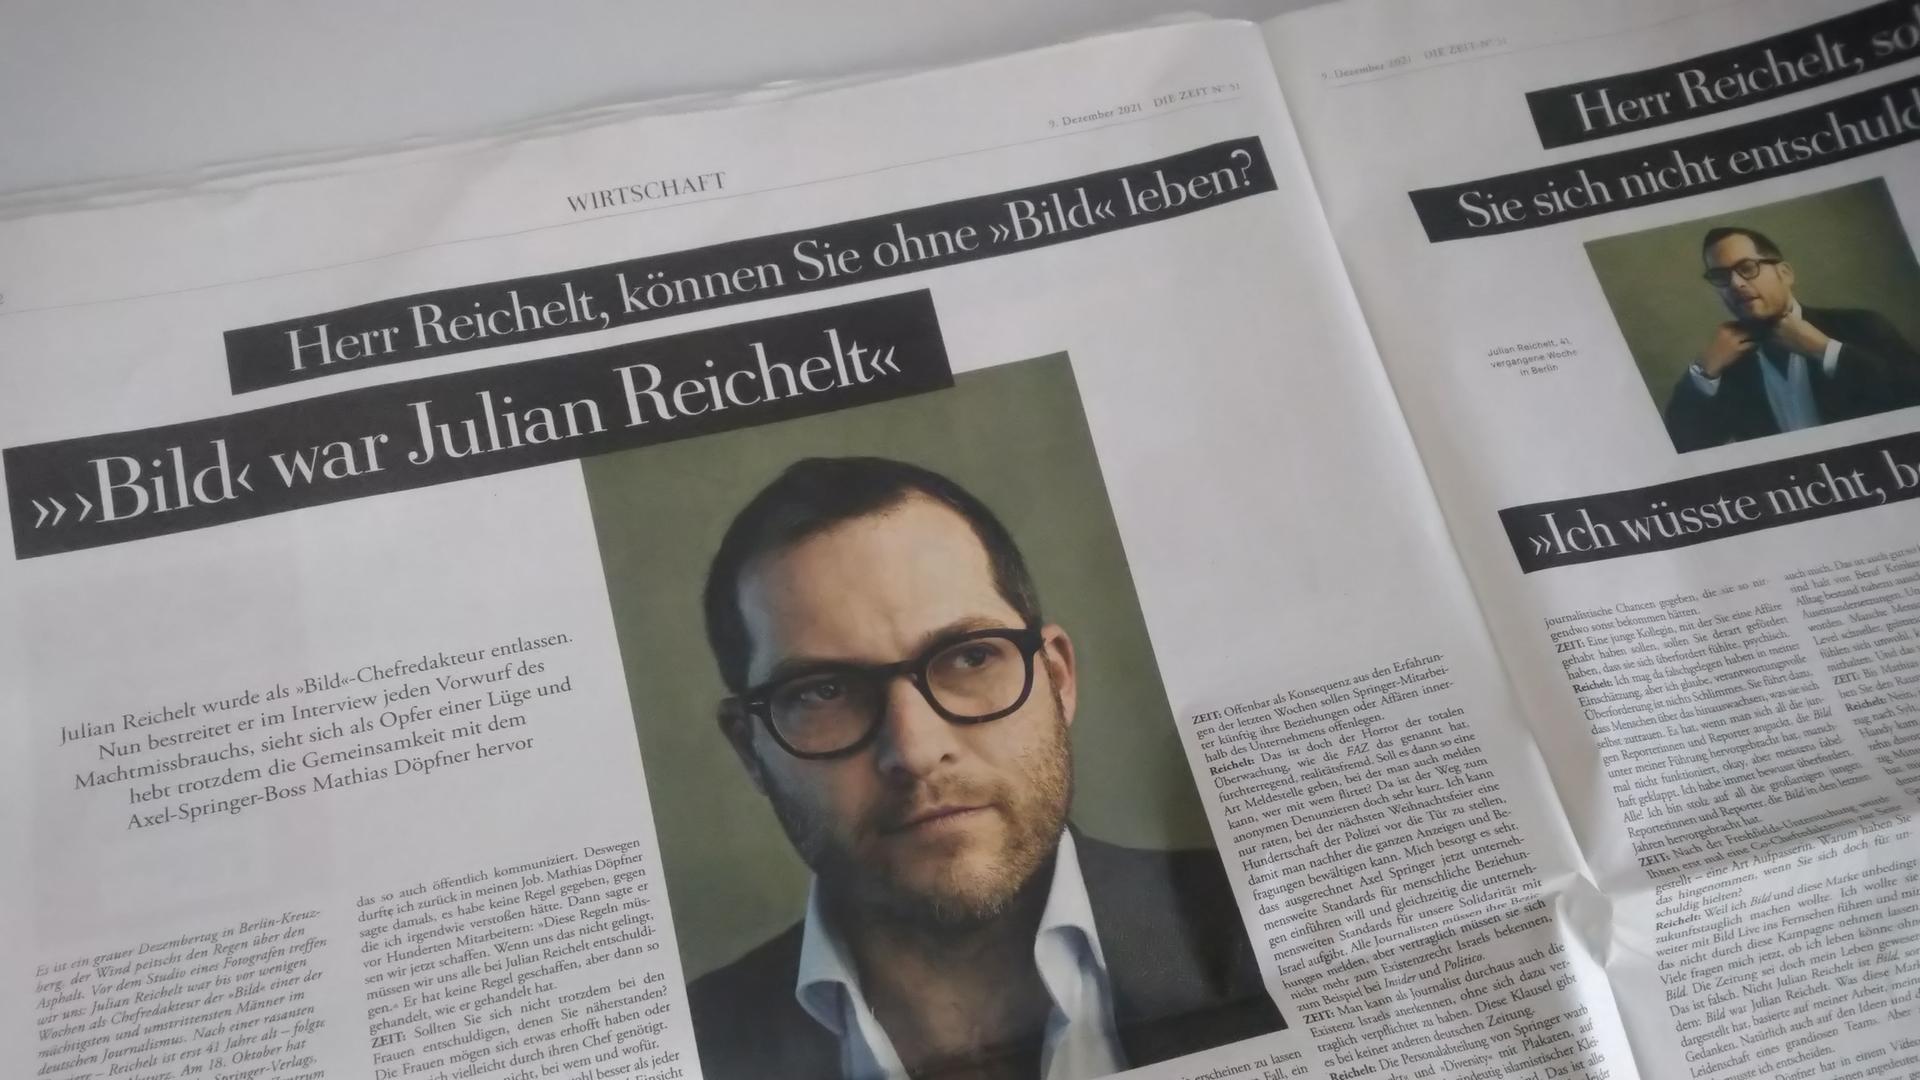 Eine Doppelseite der "Zeit" mit dem Interview mit Julian Reichelt 